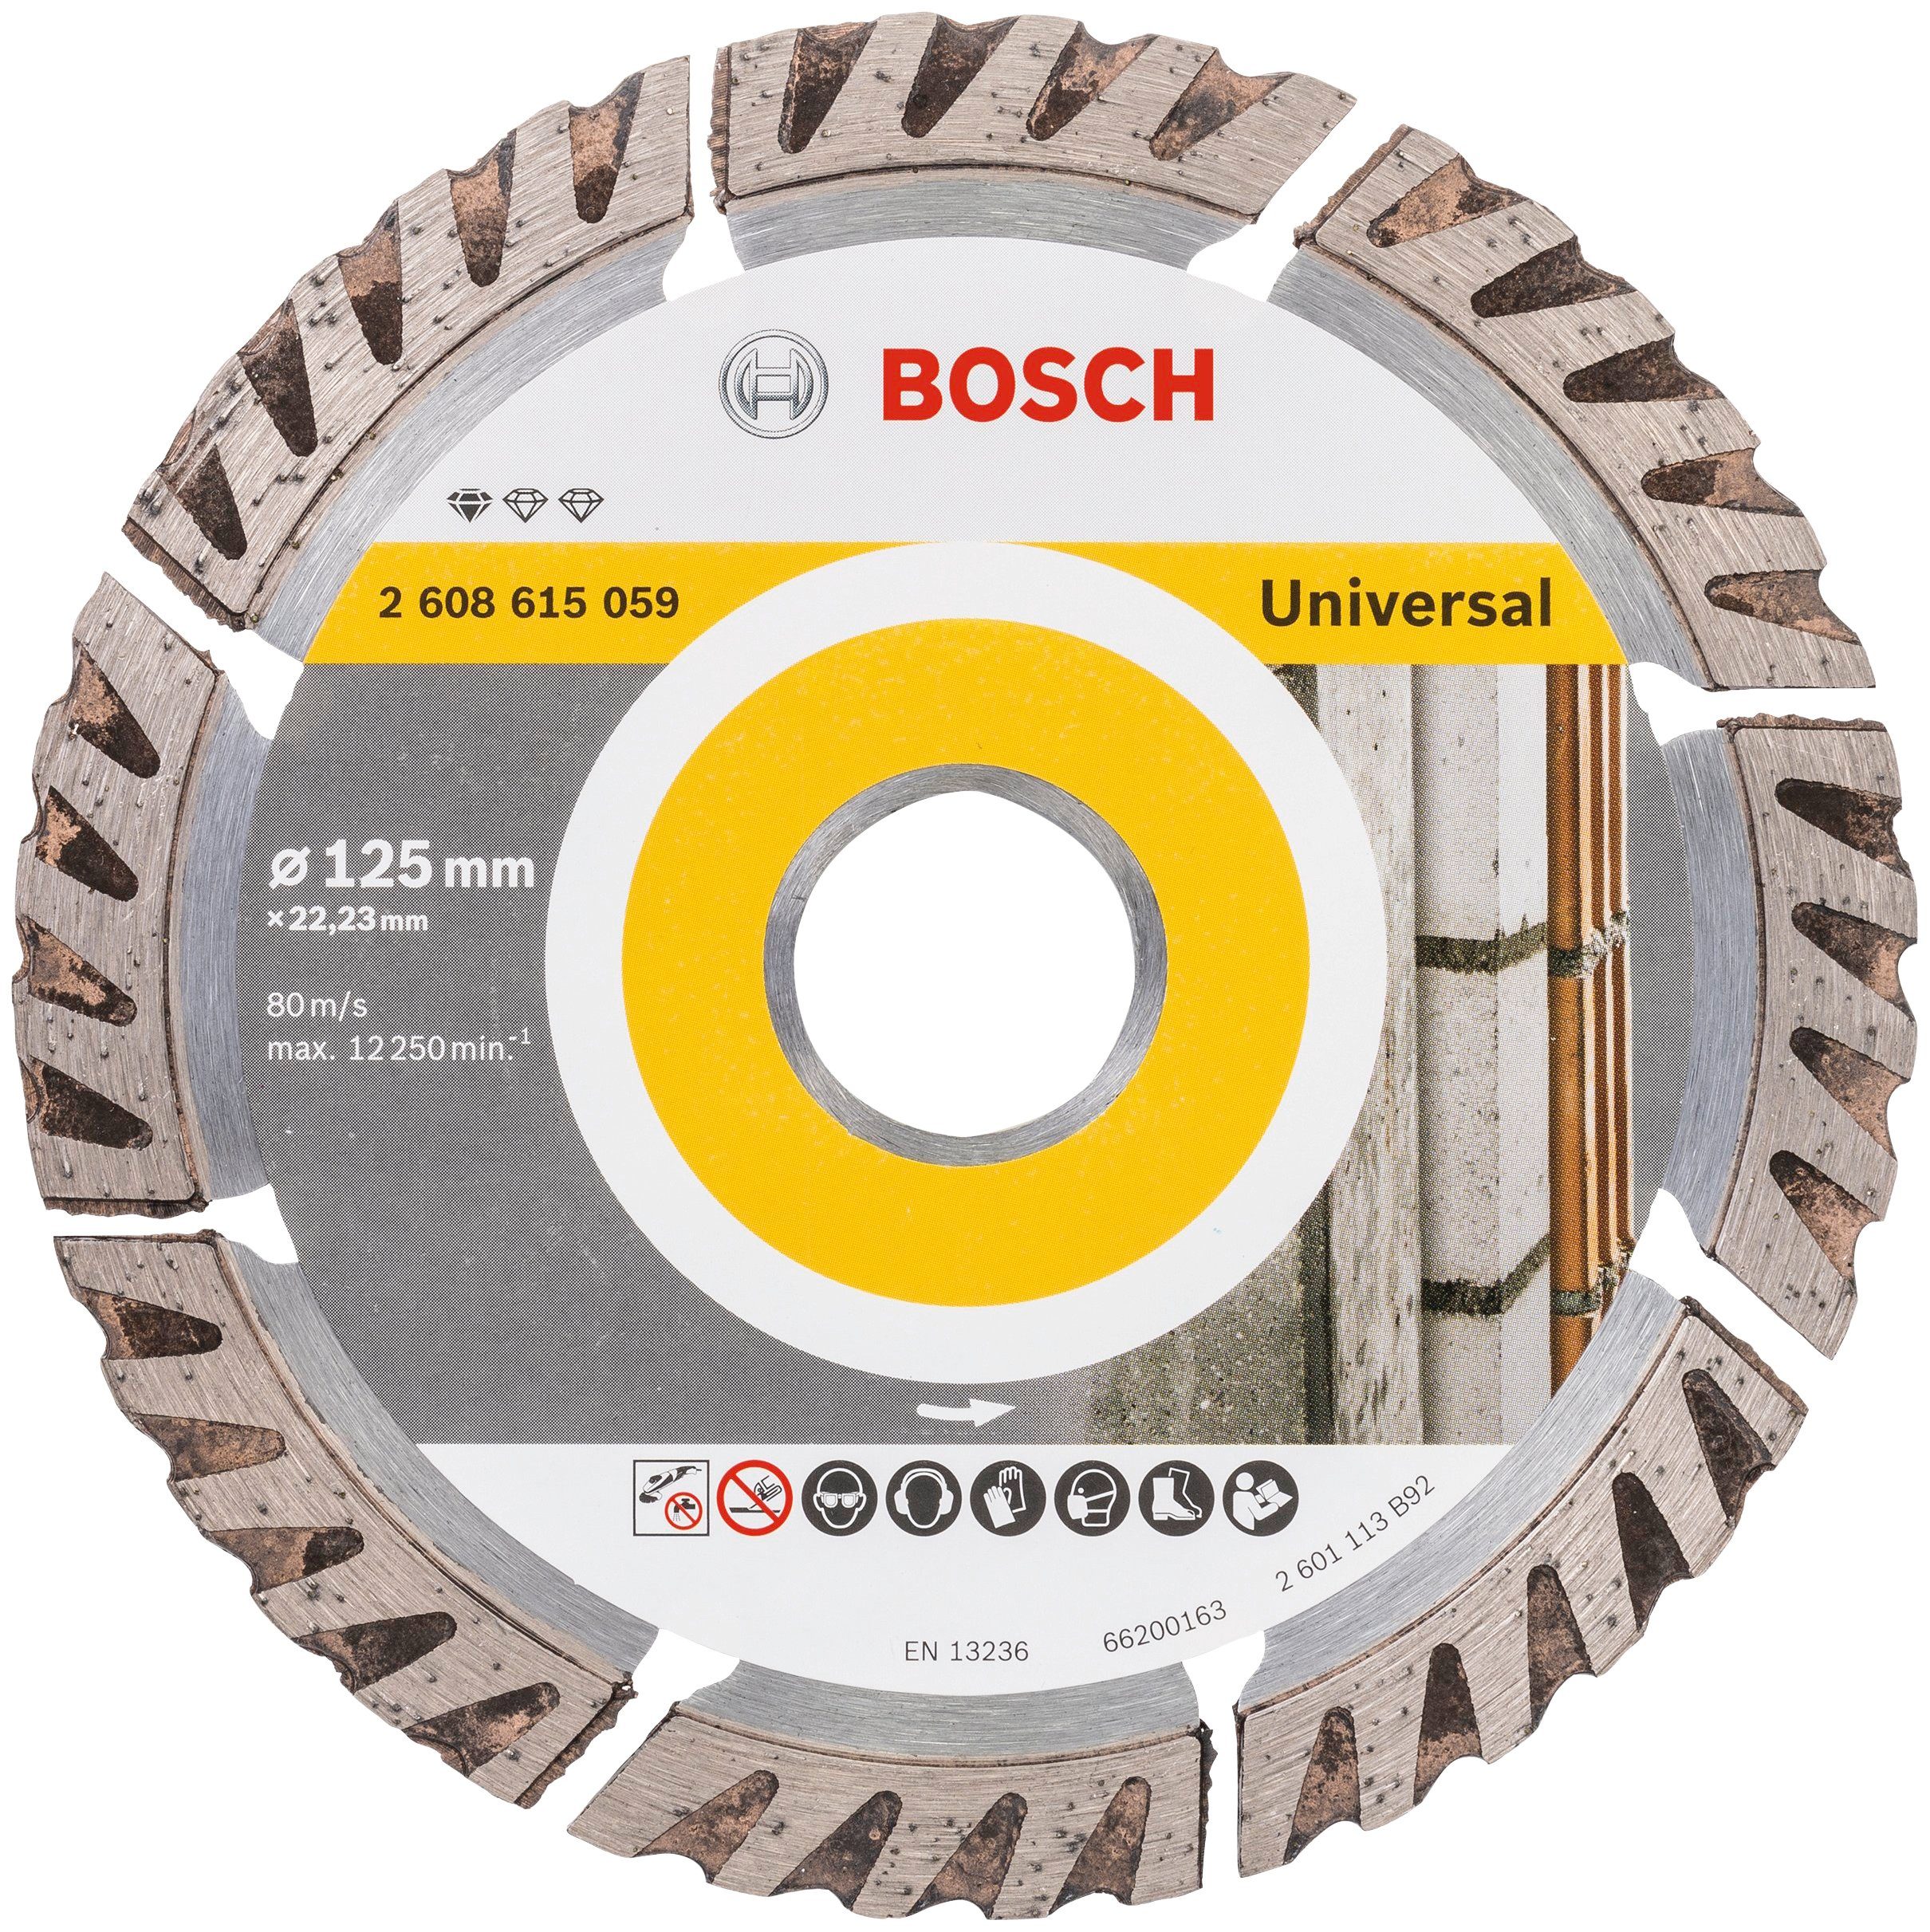 Bosch Professional Trennscheibe Standard Universal for 125 x22,23, 125 mm Ø